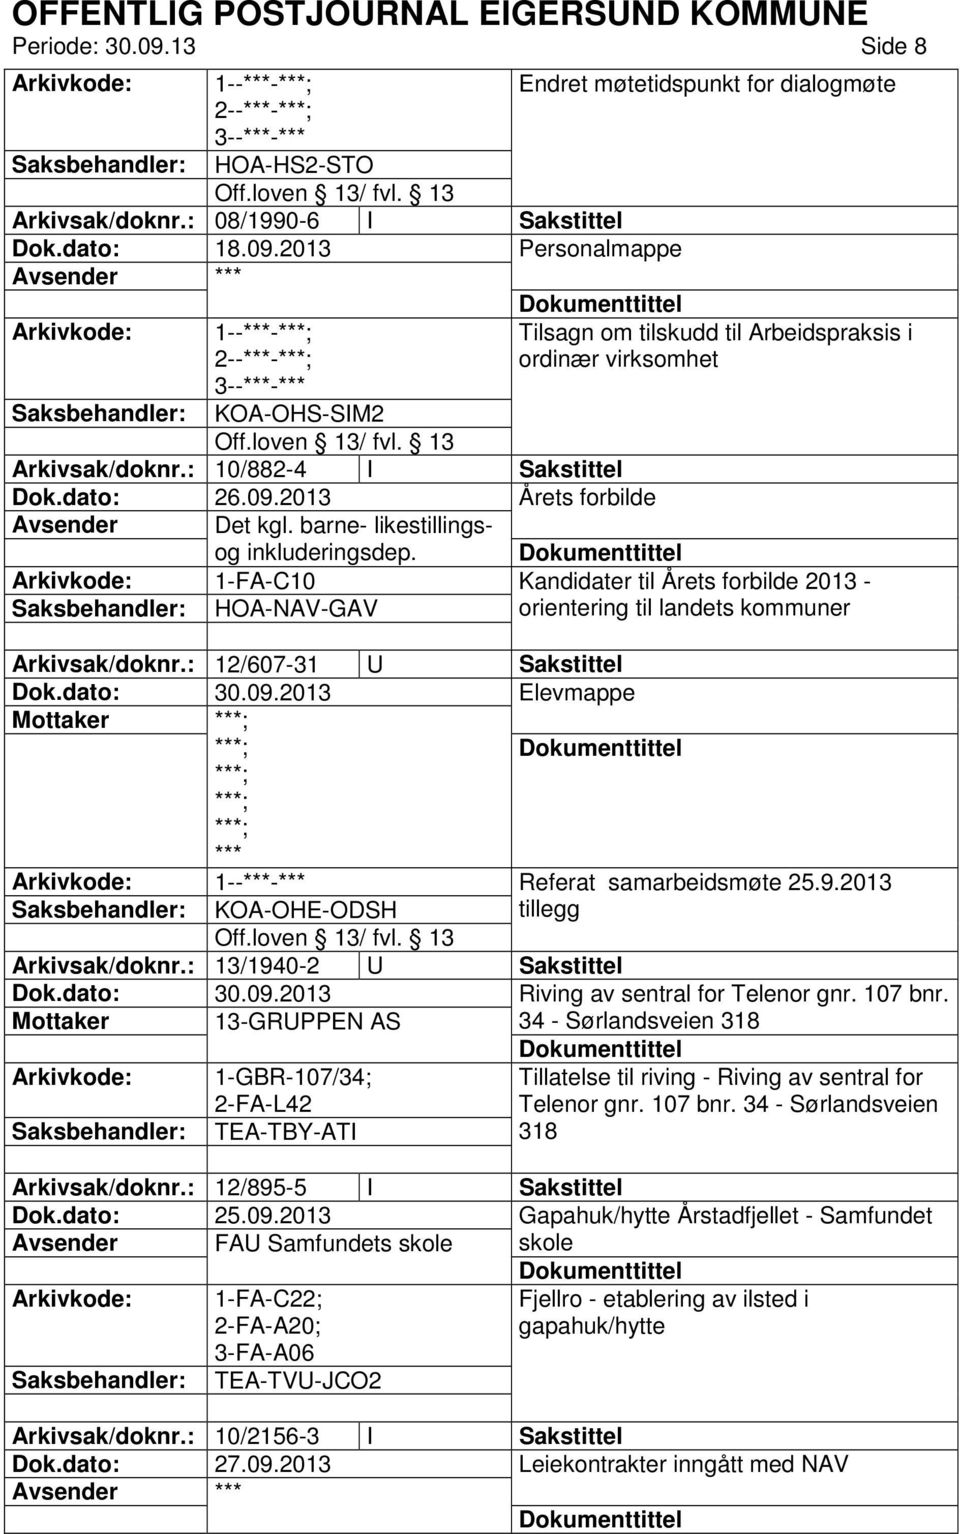 1-FA-C10 HOA-NAV-GAV Tilsagn om tilskudd til Arbeidspraksis i ordinær virksomhet Kandidater til Årets forbilde 2013 - orientering til landets kommuner Arkivsak/doknr.